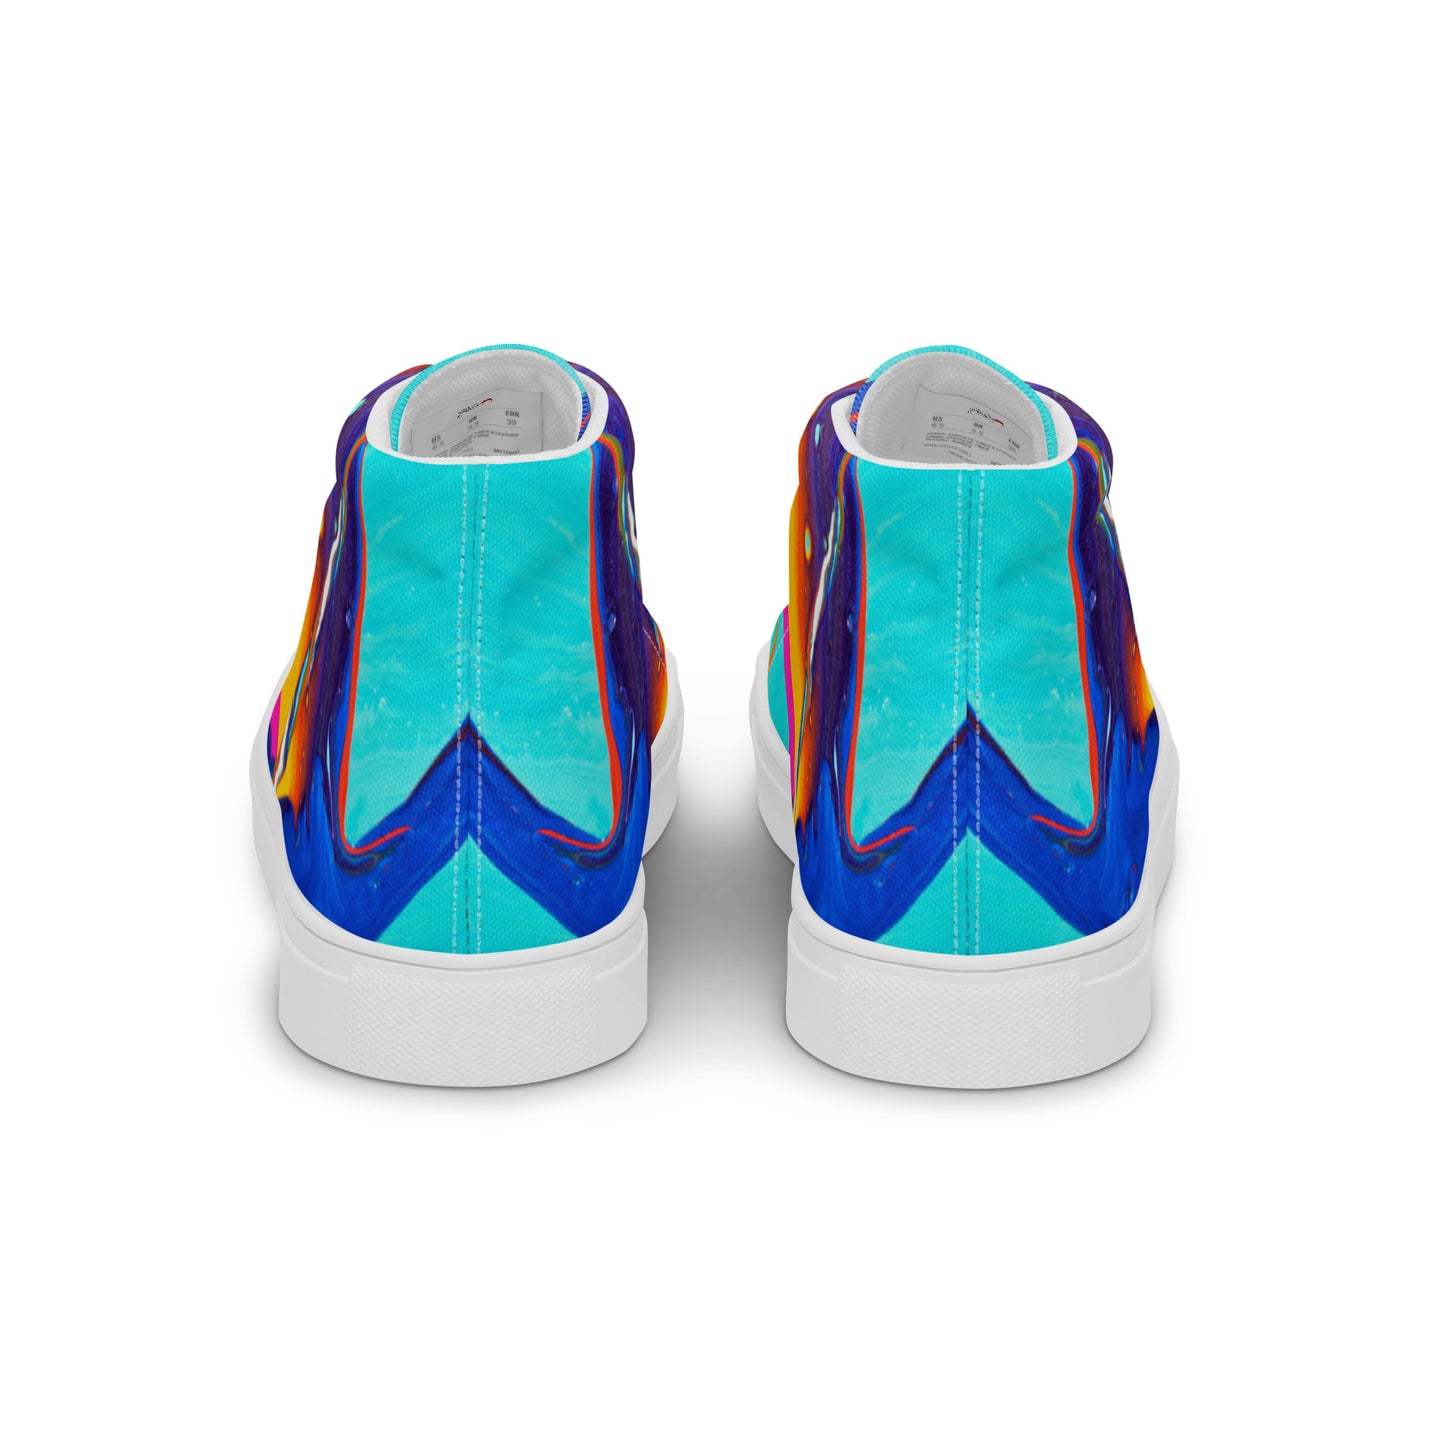 Men’s high top canvas shoes - Rainbow design